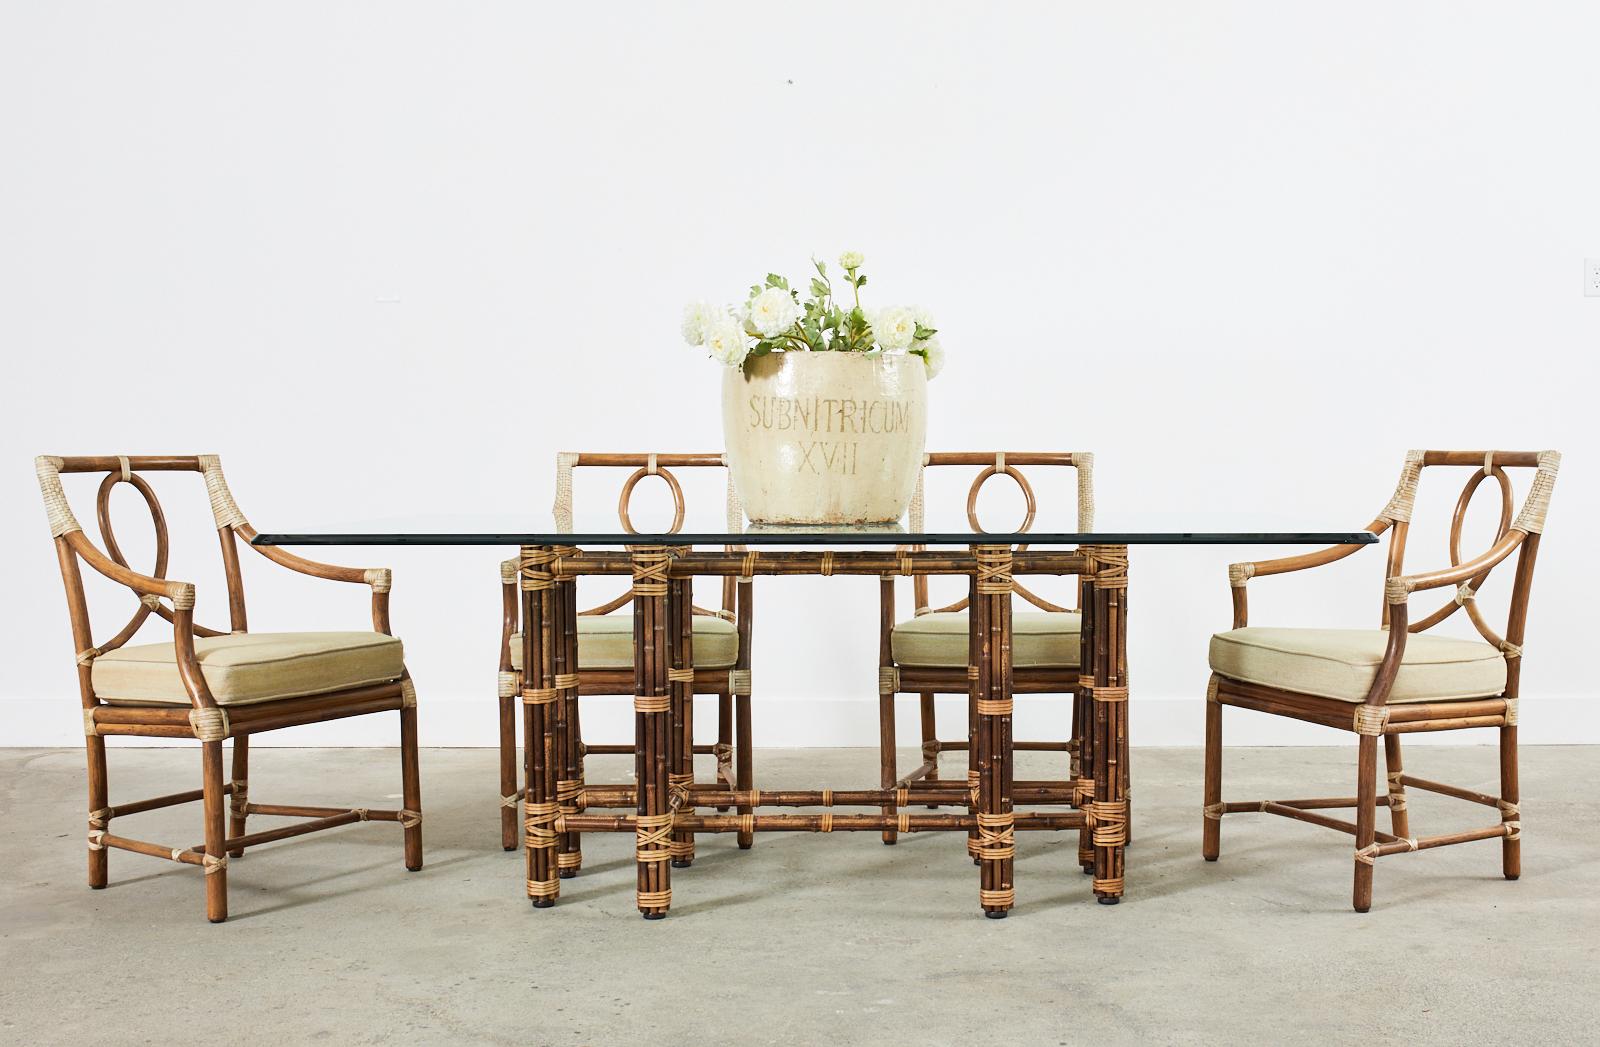 Superbe table à manger rectangulaire en bambou fabriquée dans le style moderne organique californien par McGuire. Il s'agit d'un véritable modèle McGuire # MCBA22 avec un cadre en fer peint en orange Golden Gate pour l'authenticité. La table